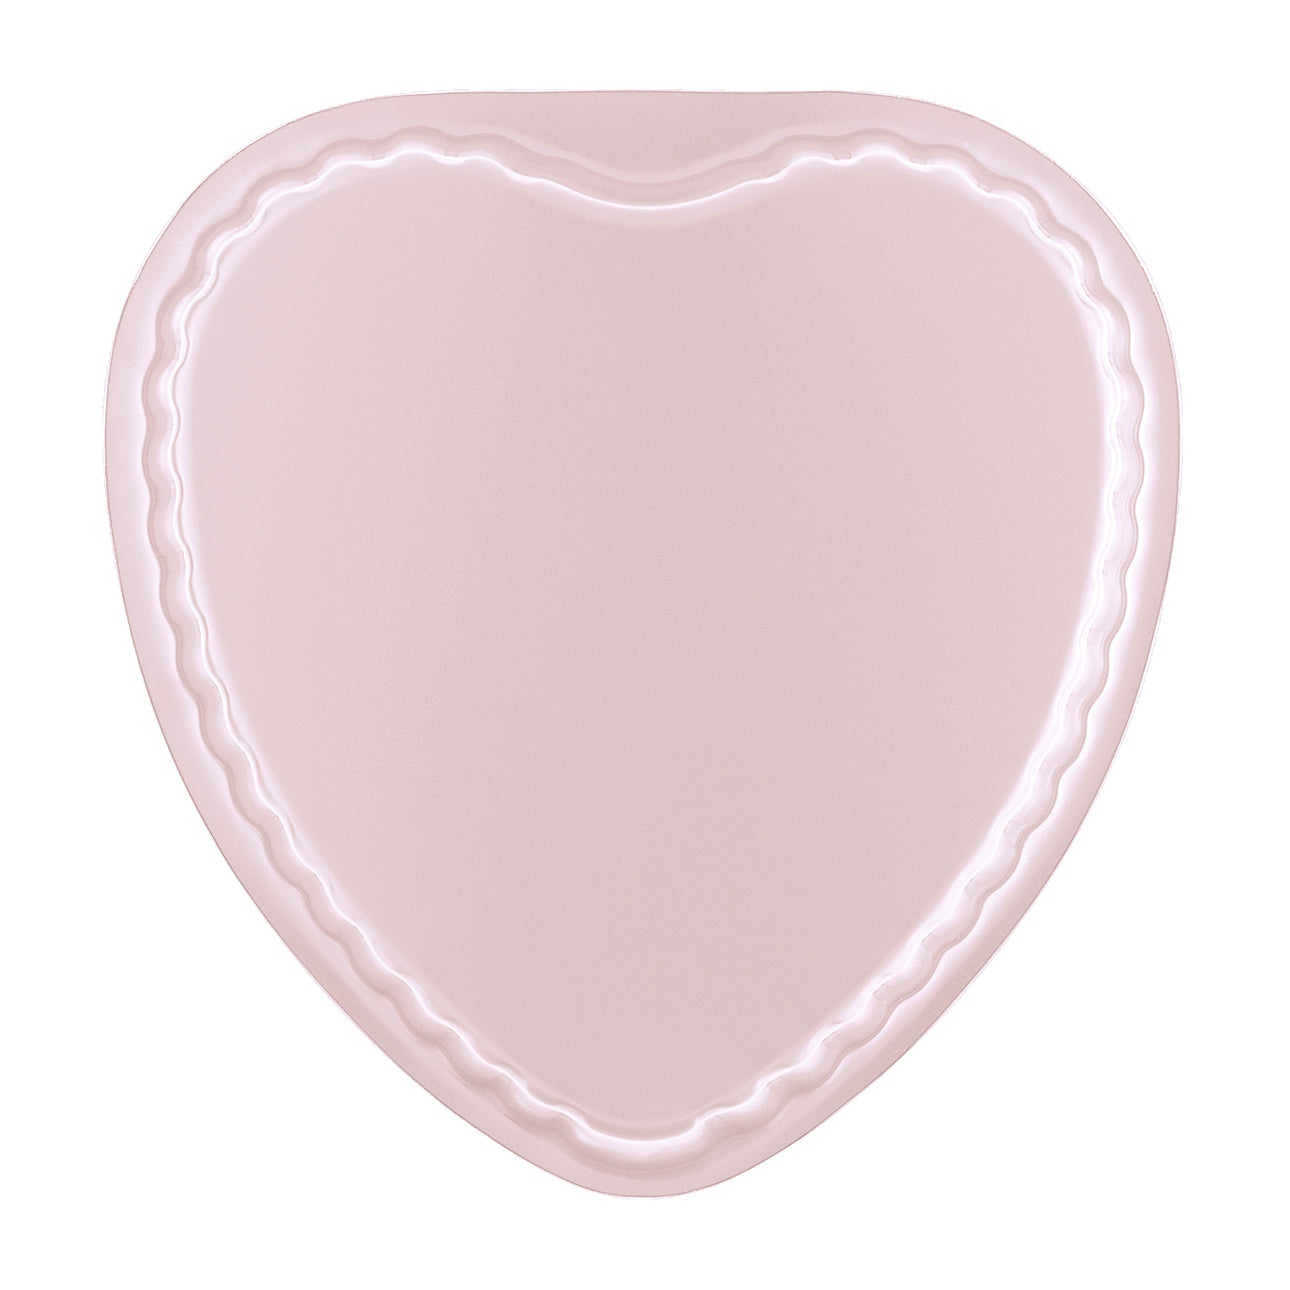 GUARDINI Heart shape non-stick cake pan